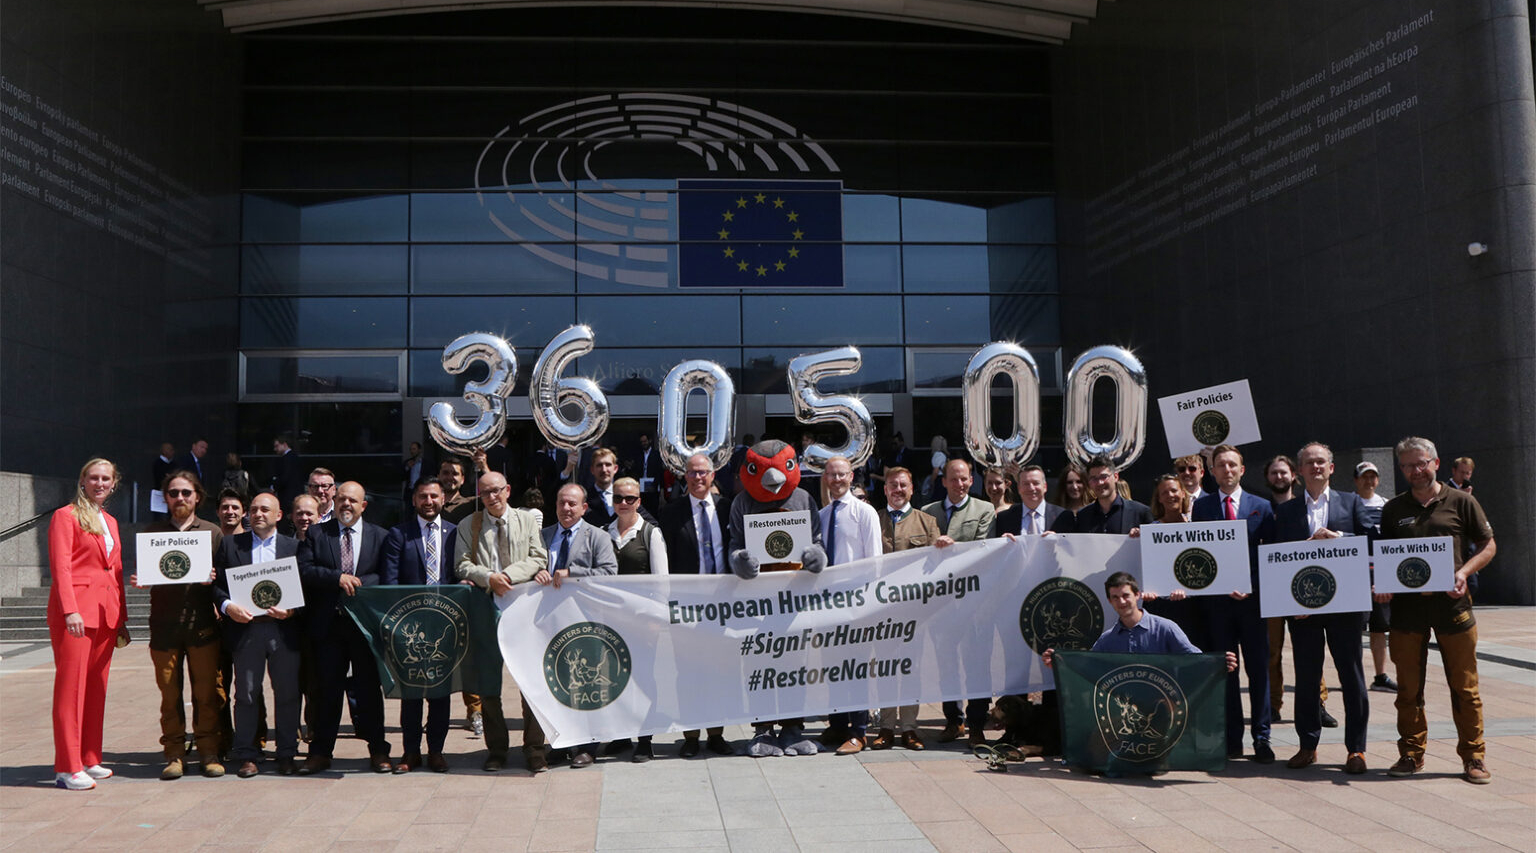 Oltre 360.000 firme per la petizione dei cacciatori europei